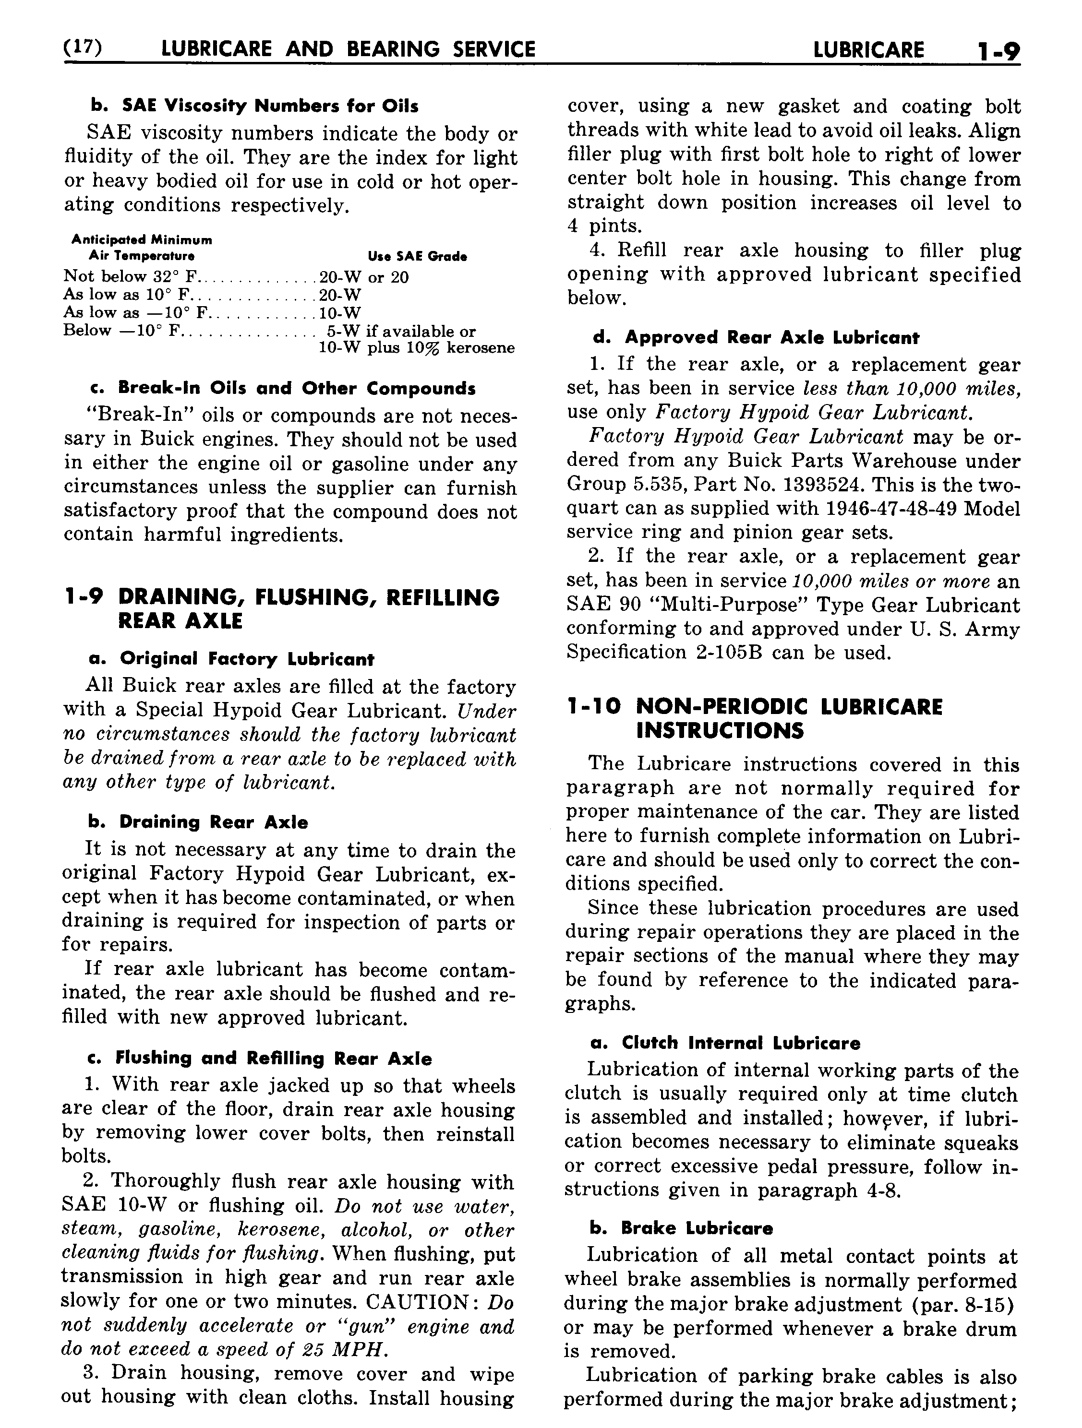 n_02 1948 Buick Shop Manual - Lubricare-009-009.jpg